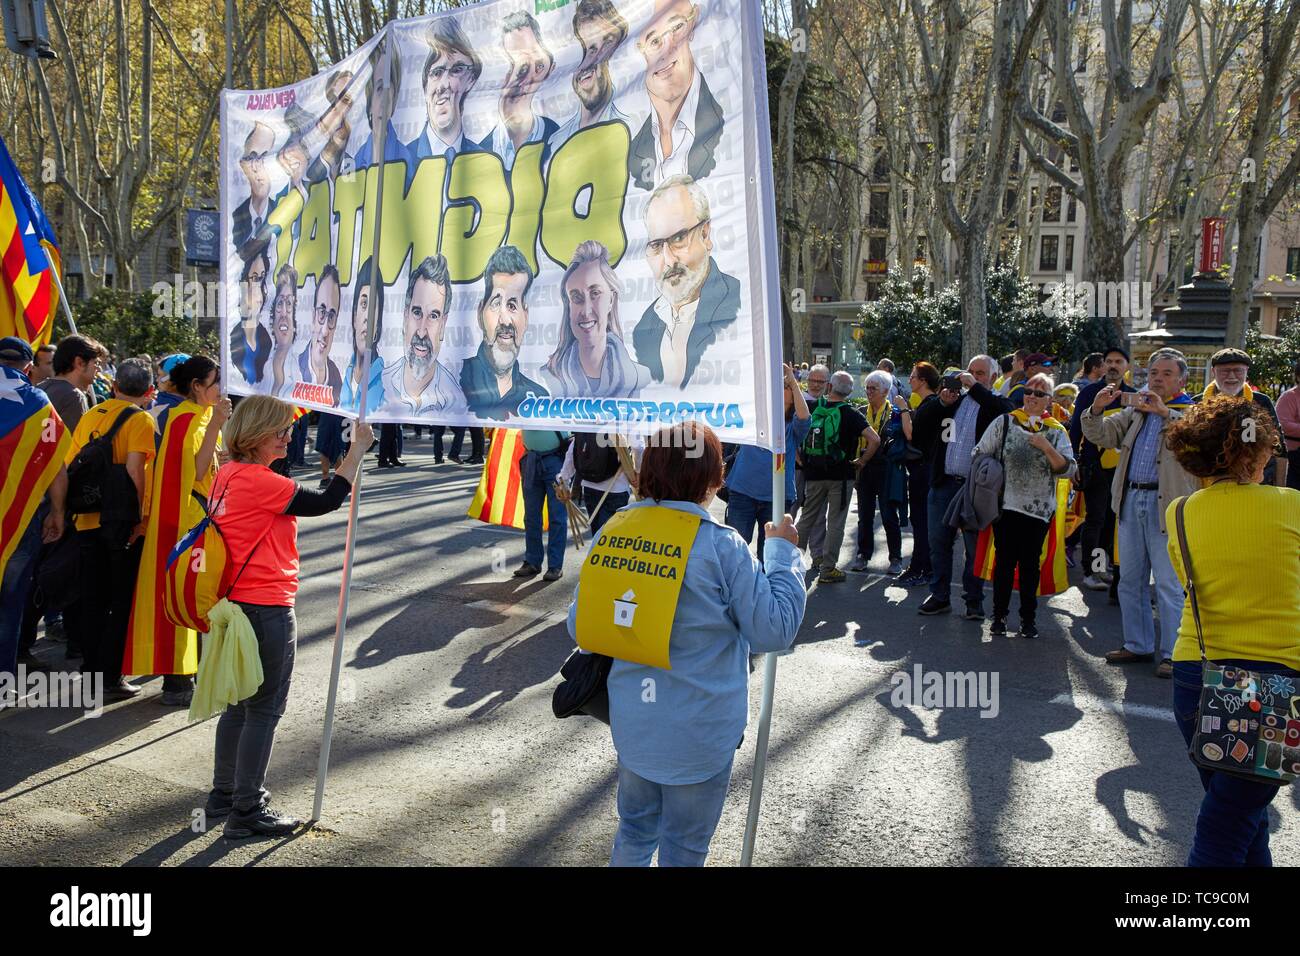 Démonstration des Catalans qui revendique l'indépendance, Paseo del Prado, Madrid, Espagne, Europe Banque D'Images